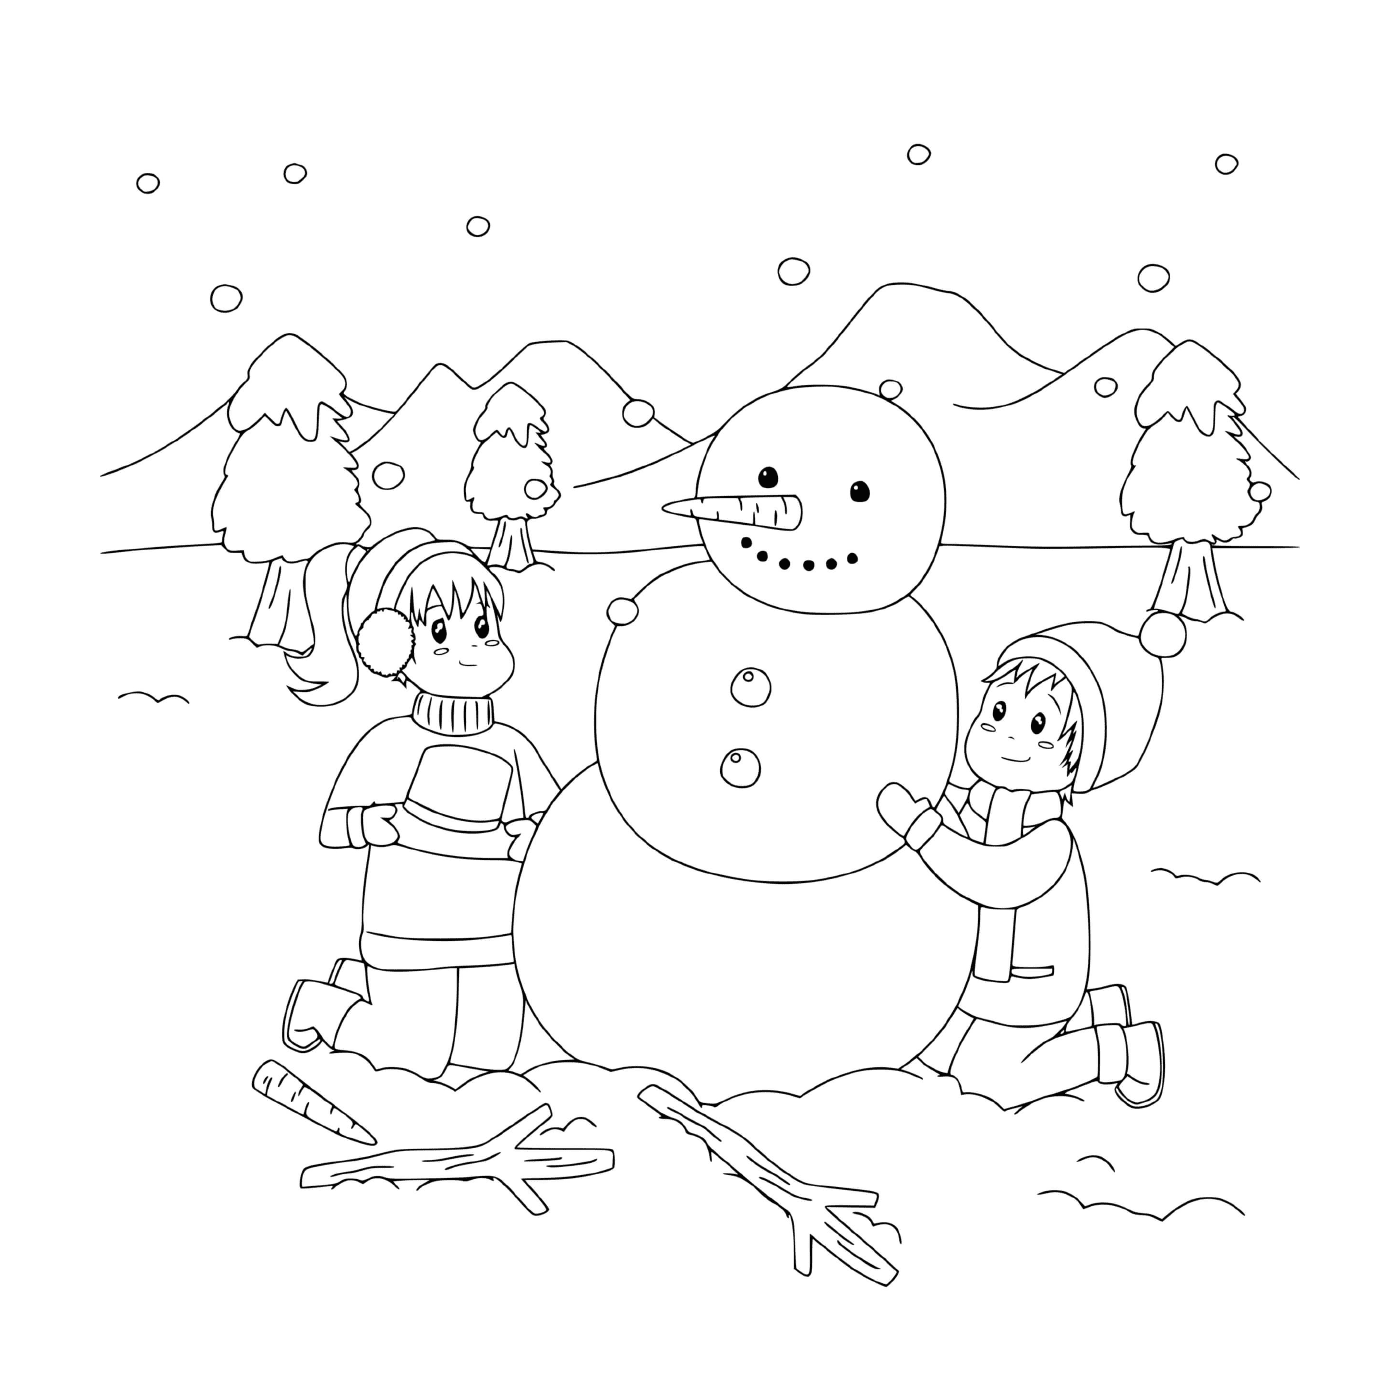  I bambini costruiscono un pupazzo di neve in un paesaggio innevato 